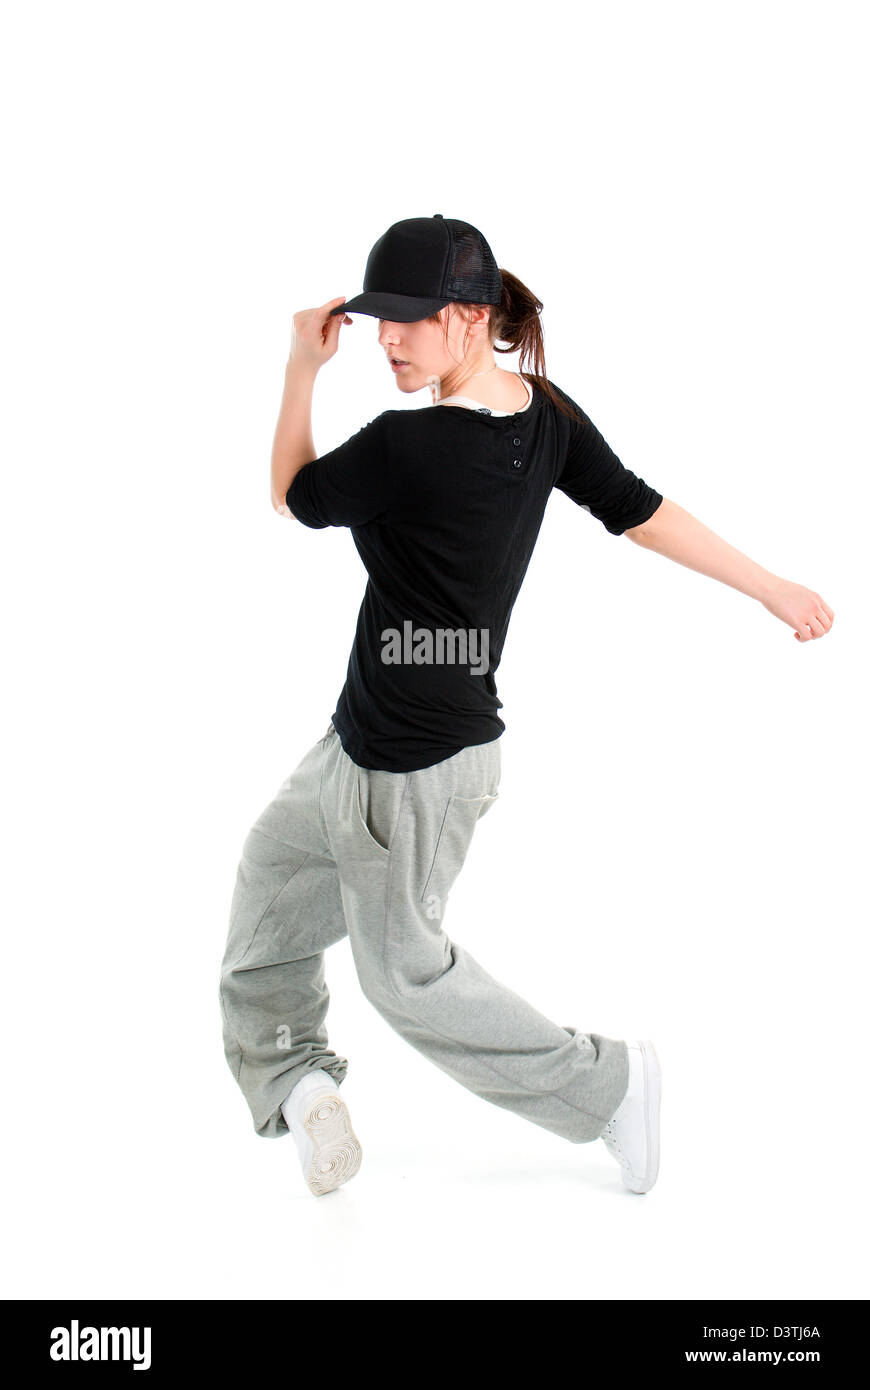 Stylish Und Cool Hip Hop Stil Tanzerin Posiert Auf Weissem Hintergrund Stockfotografie Alamy